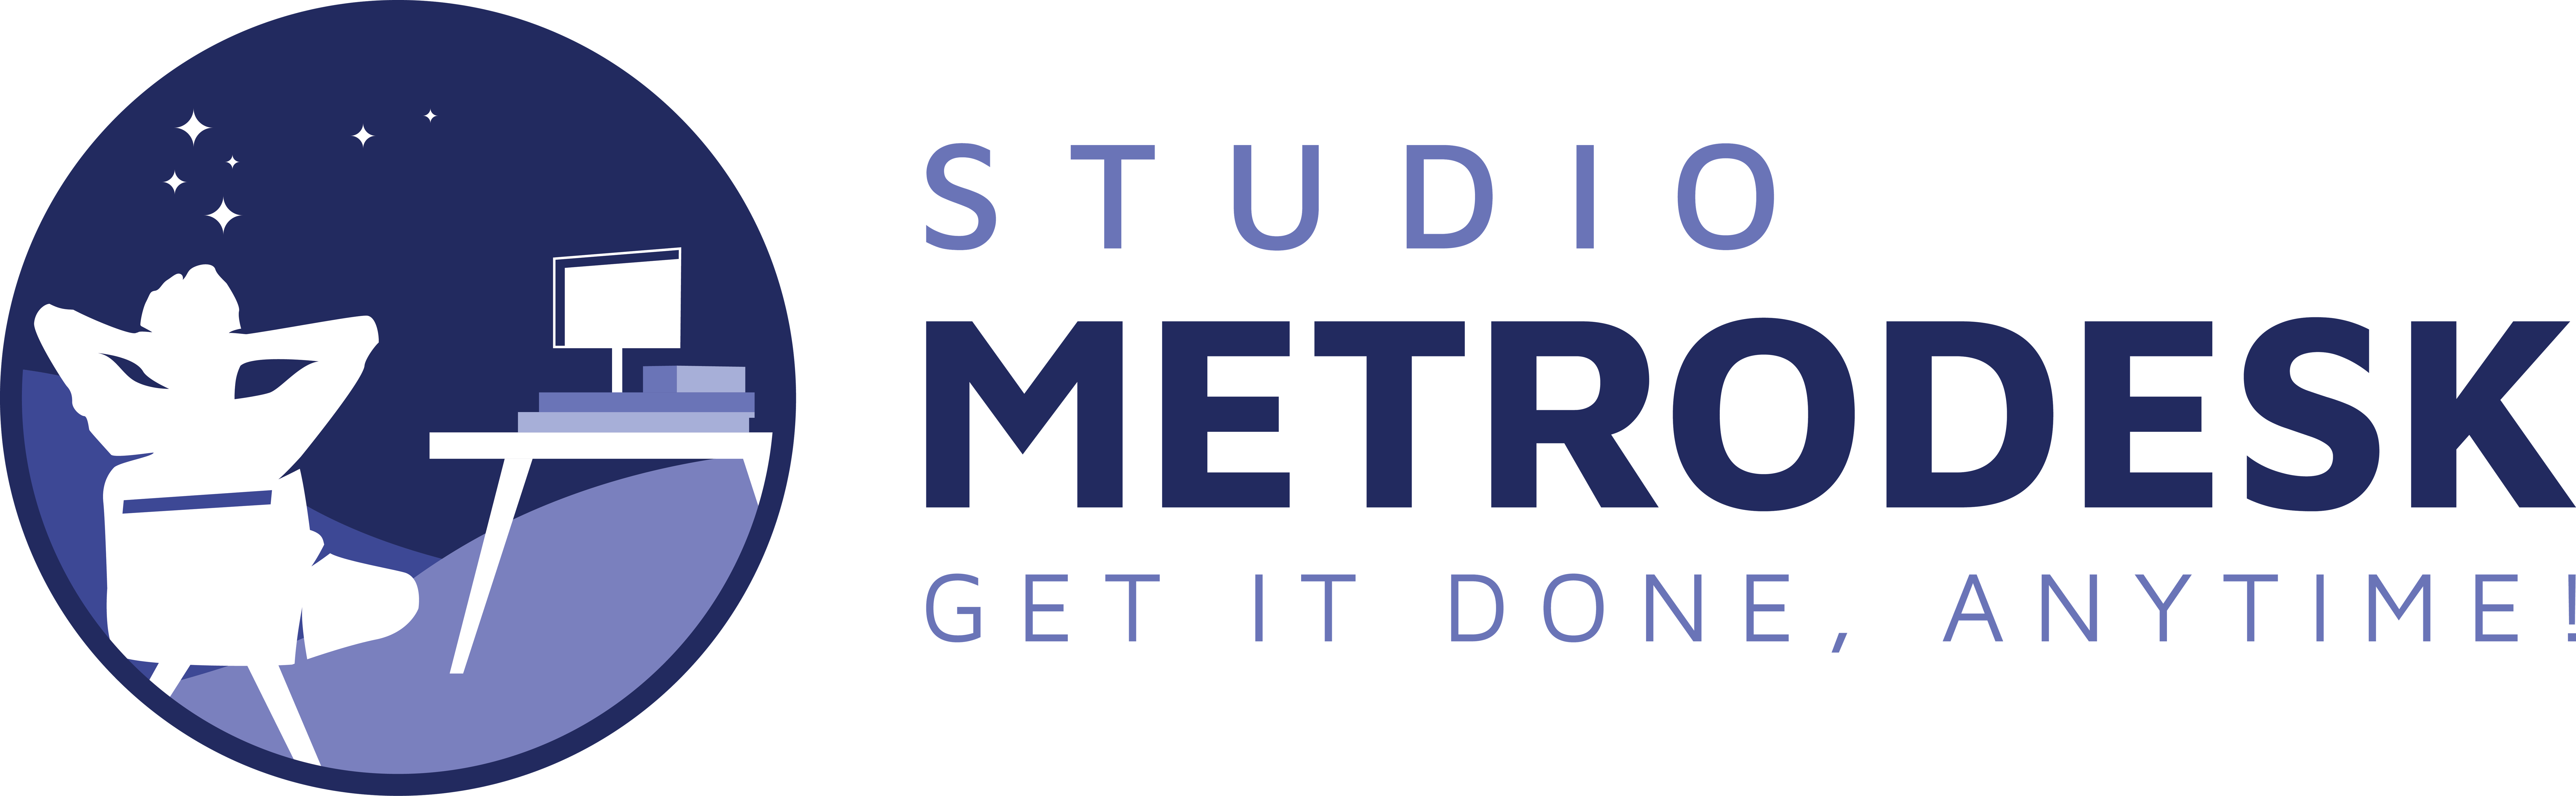 Studio Metrodesk